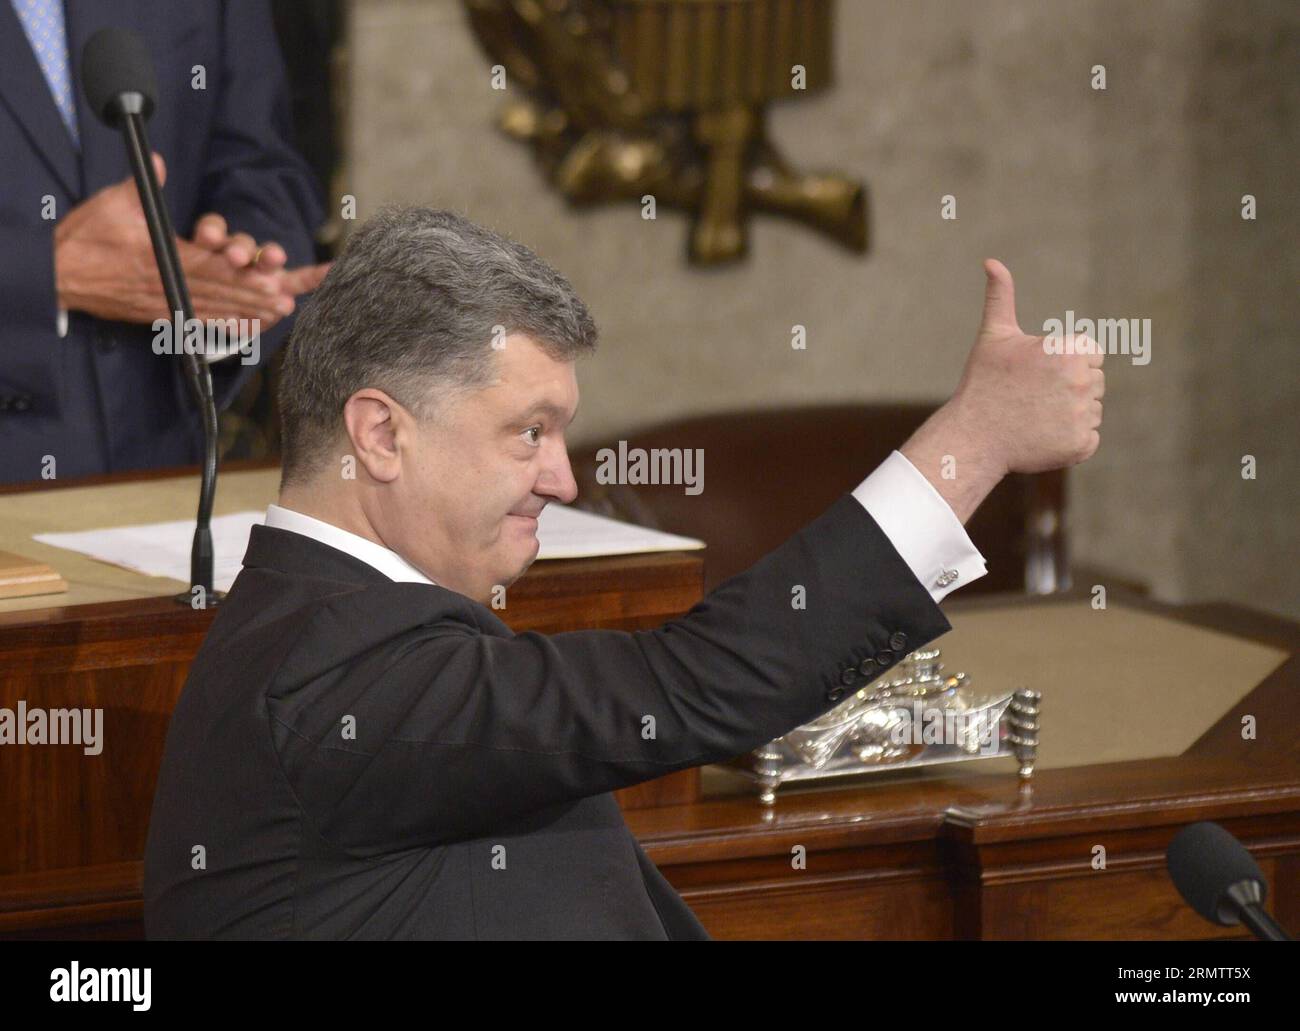 (140918) -- WASHINGTON D.C., 18. September 2014 -- der ukrainische Präsident Petro Poroschenko begrüßt während einer gemeinsamen Sitzung des US-Kongresses im US-Kapitol in Washington D.C., den Vereinigten Staaten, 18. September 2014. Petro Poroschenko bat den US-Kongress am Donnerstag um mehr Unterstützung im Kampf gegen die Rebellen im Osten des Landes. US-WASHINGTON-UKRAINE-POROSCHENKO YinxBogu PUBLICATIONxNOTxINxCHN Washington D C 18. September 2014 der ukrainische Präsident Petro Poroschenko begrüßt während einer gemeinsamen Sitzung des US-Kongresses im US-Kapitol in Washington D C die Vereinigten Staaten 18. September 2014 Petro Poros Stockfoto